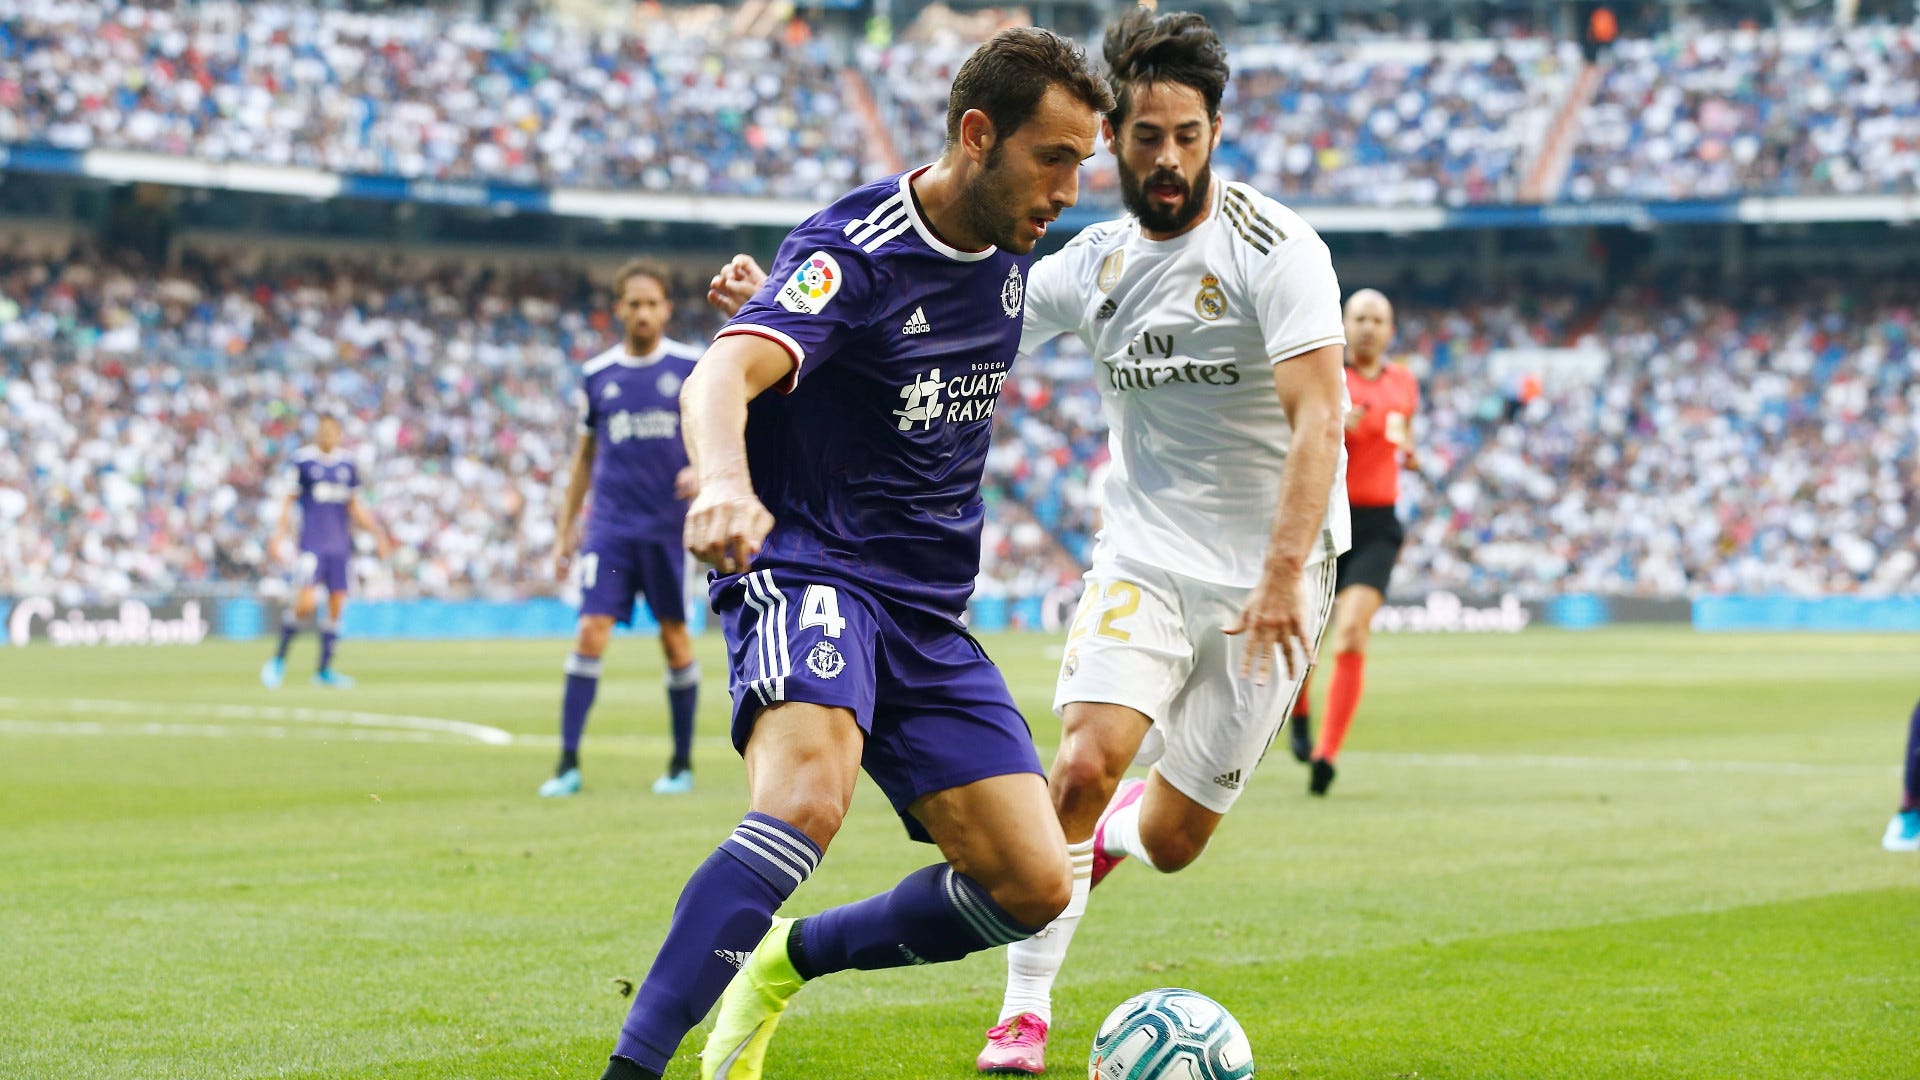 Real Madrid gegen Real Valladolid heute live im TV und LIVE-STREAM sehen So wird LaLiga übertragen Goal Deutschland